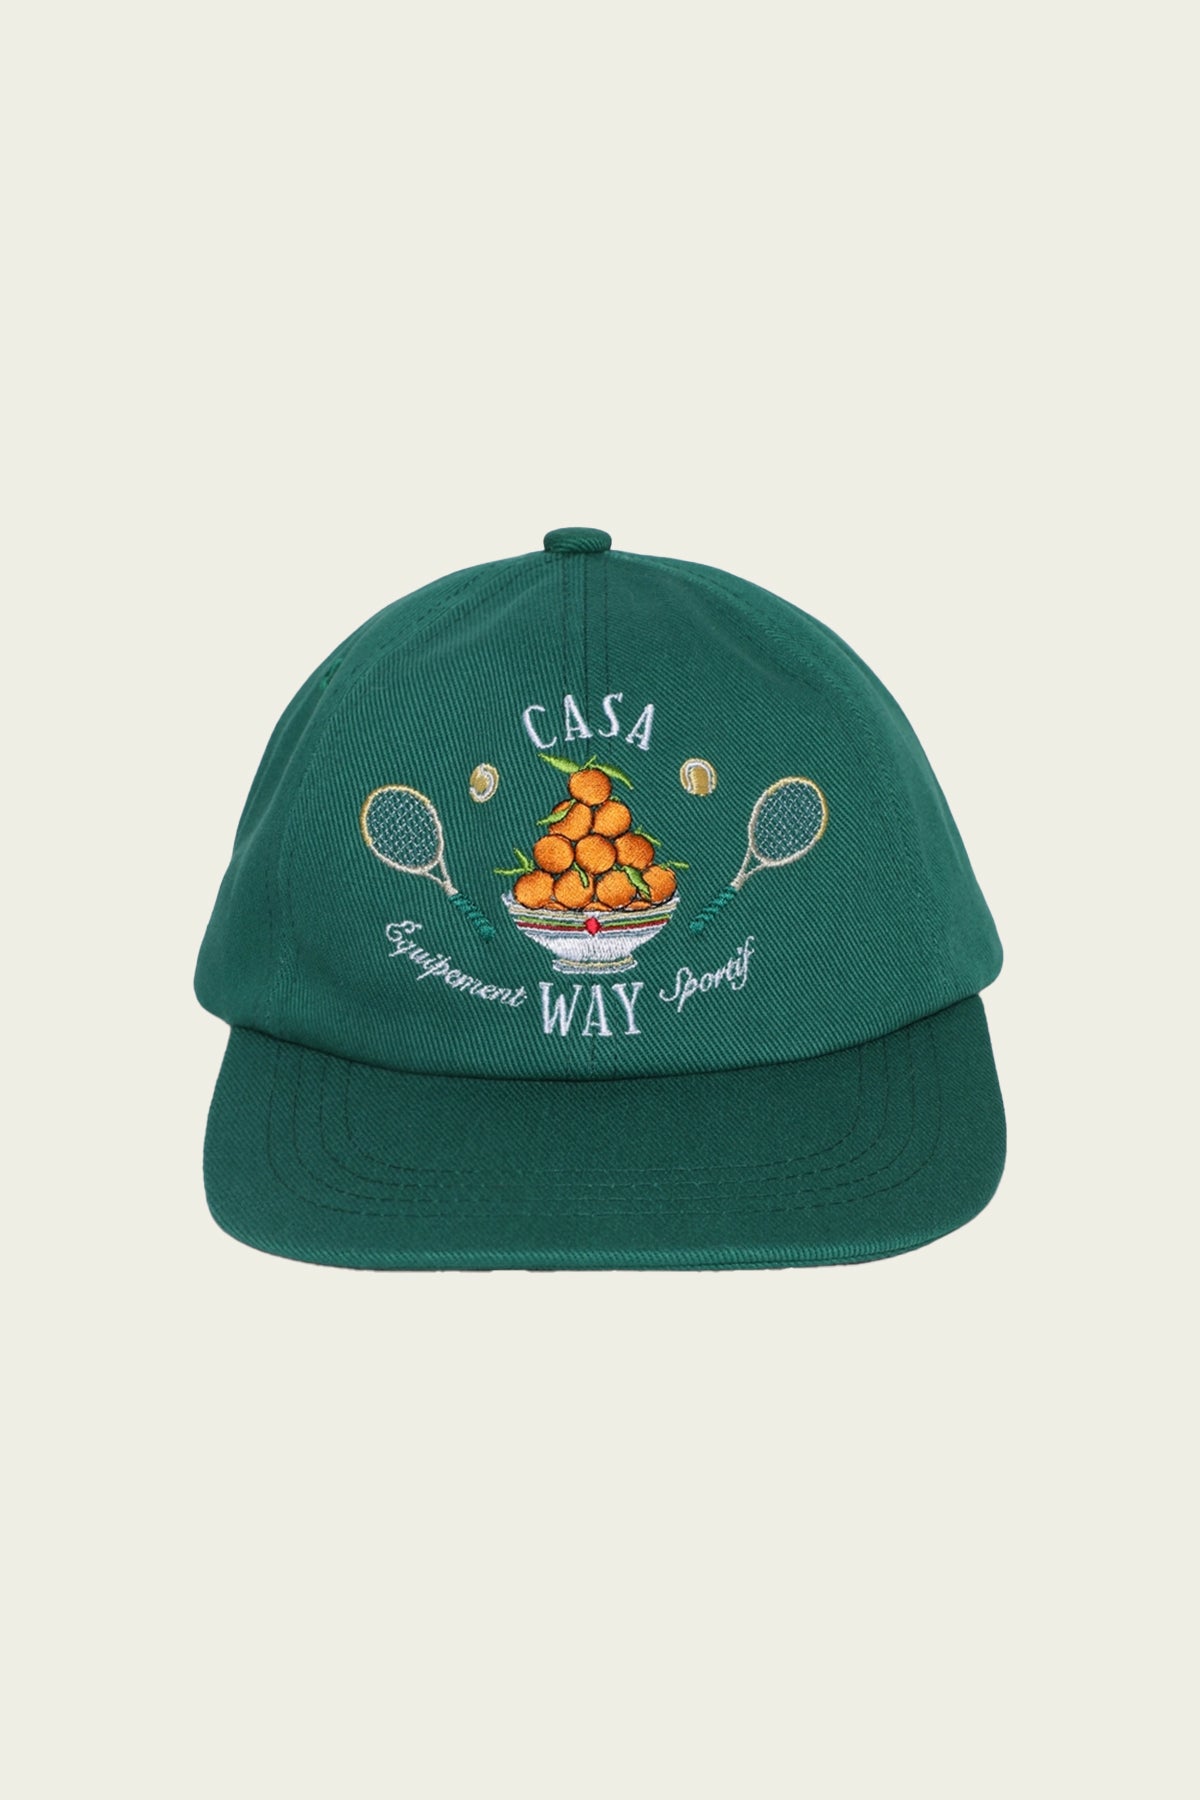 Casa Way Embroidered Cap in Green - shop-olivia.com